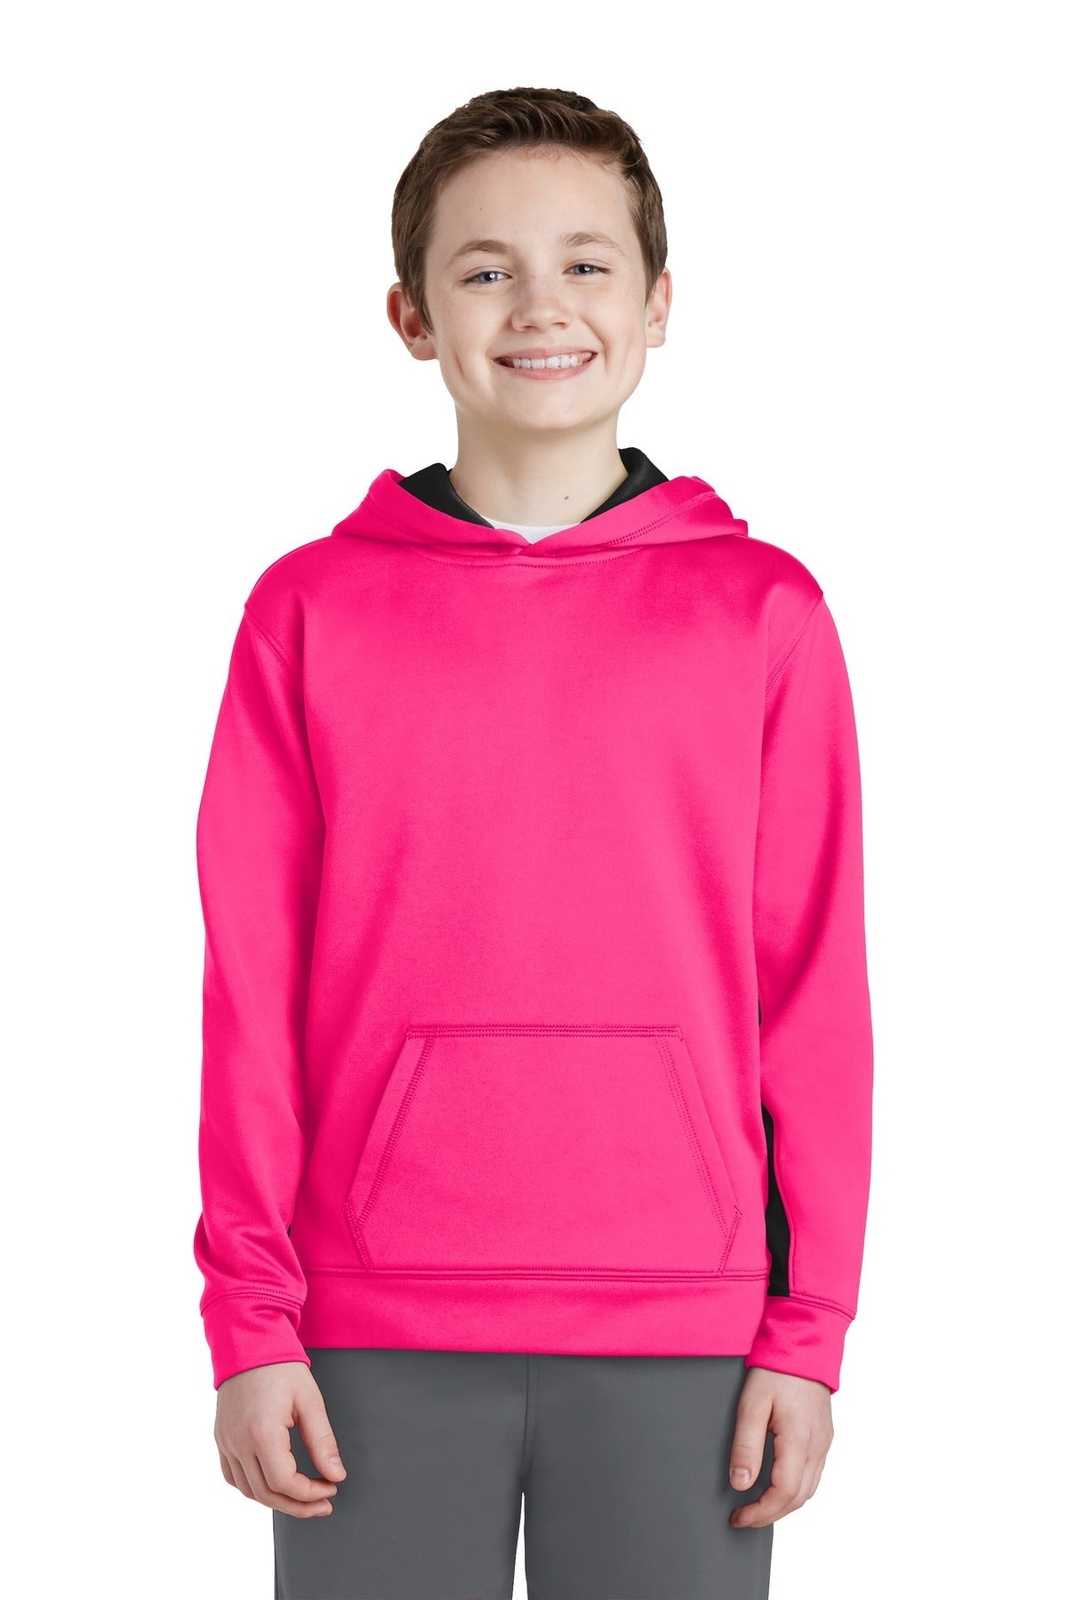 Sport-Tek YST235 Youth Sport-Wick Fleece Colorblock Hooded Pullover - Neon Pink Black - HIT a Double - 1